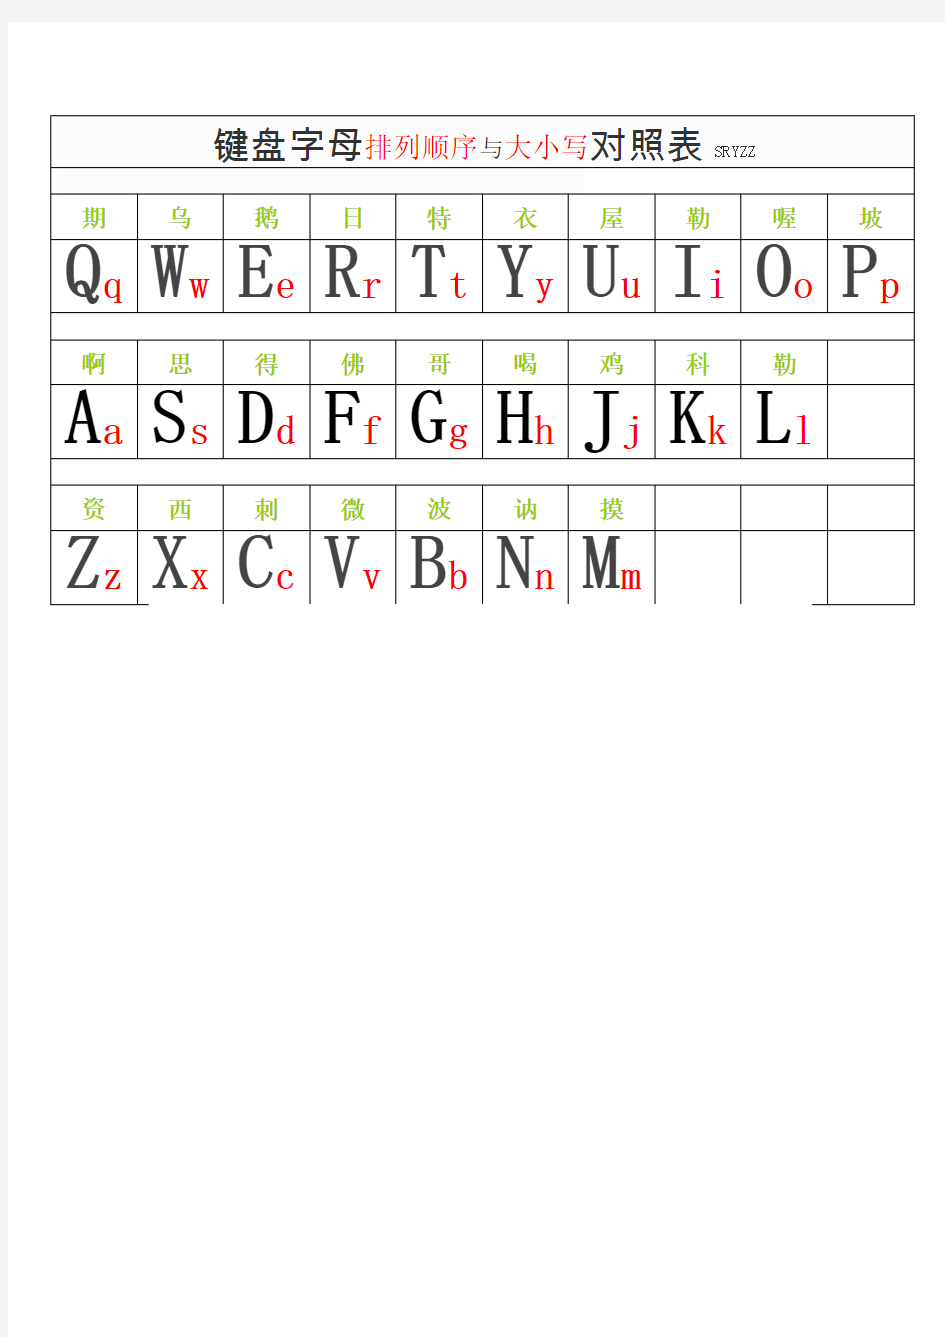 键盘字母排列顺序与大小写对照表【大】